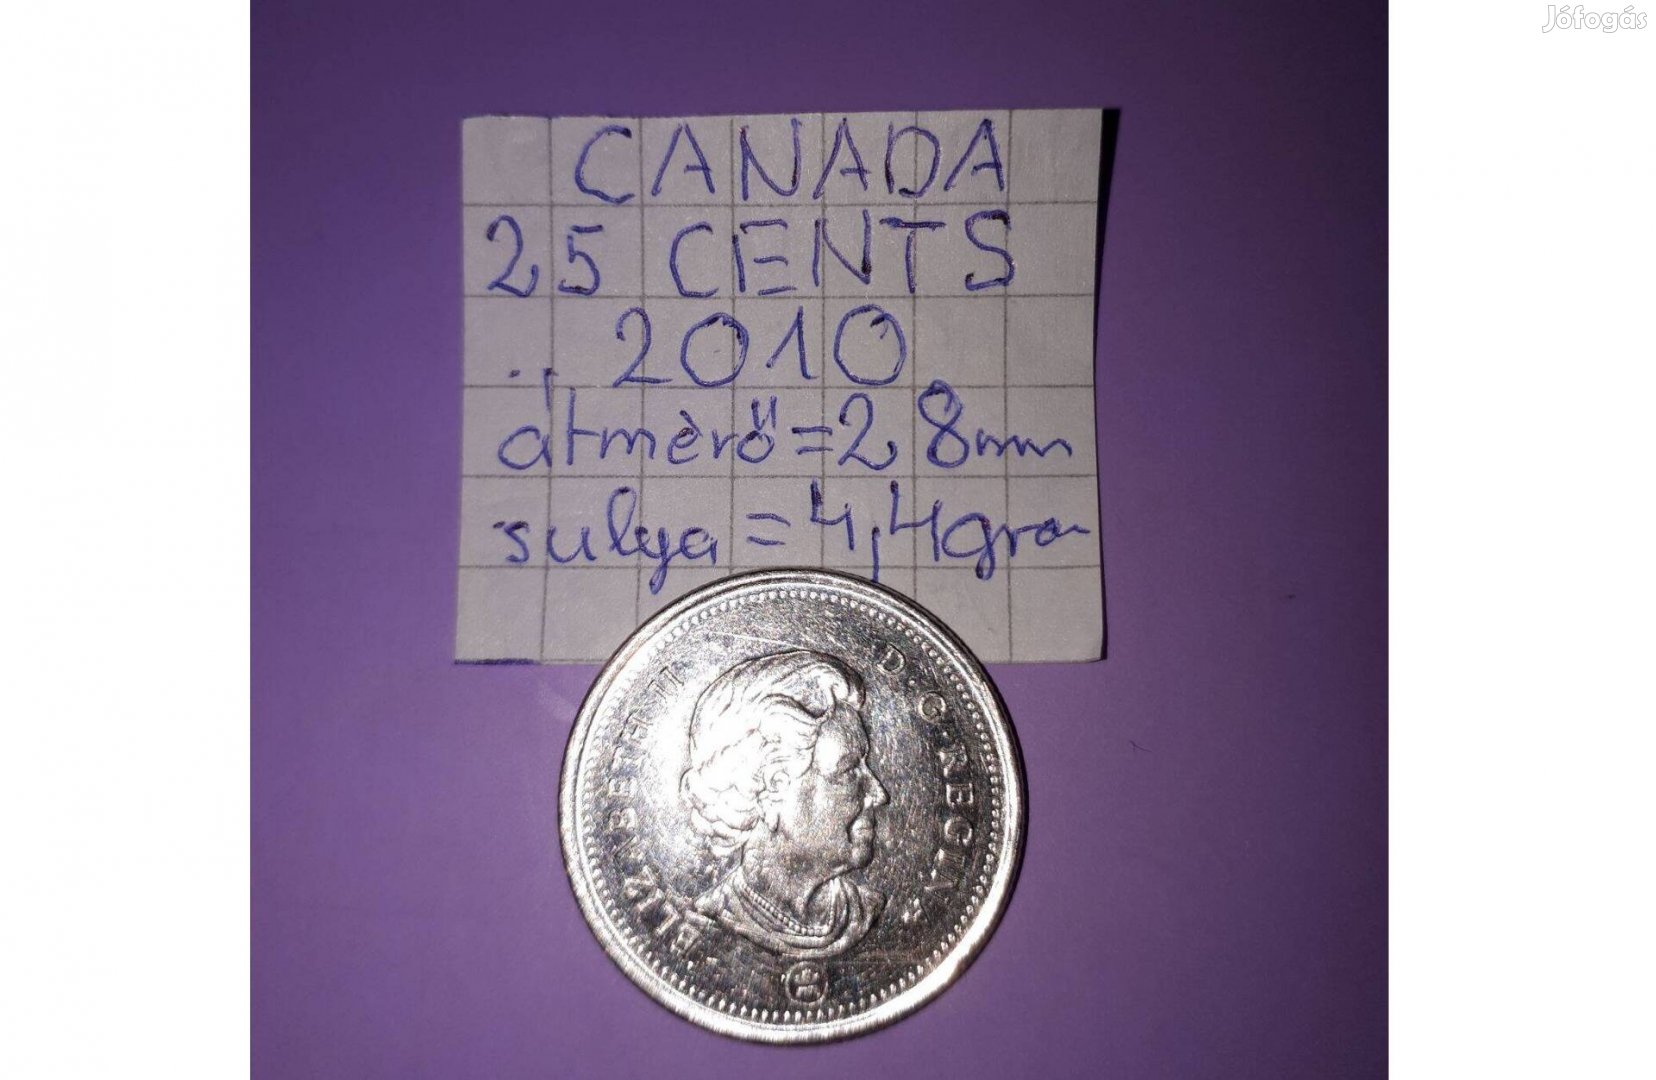 Canada 25 cent